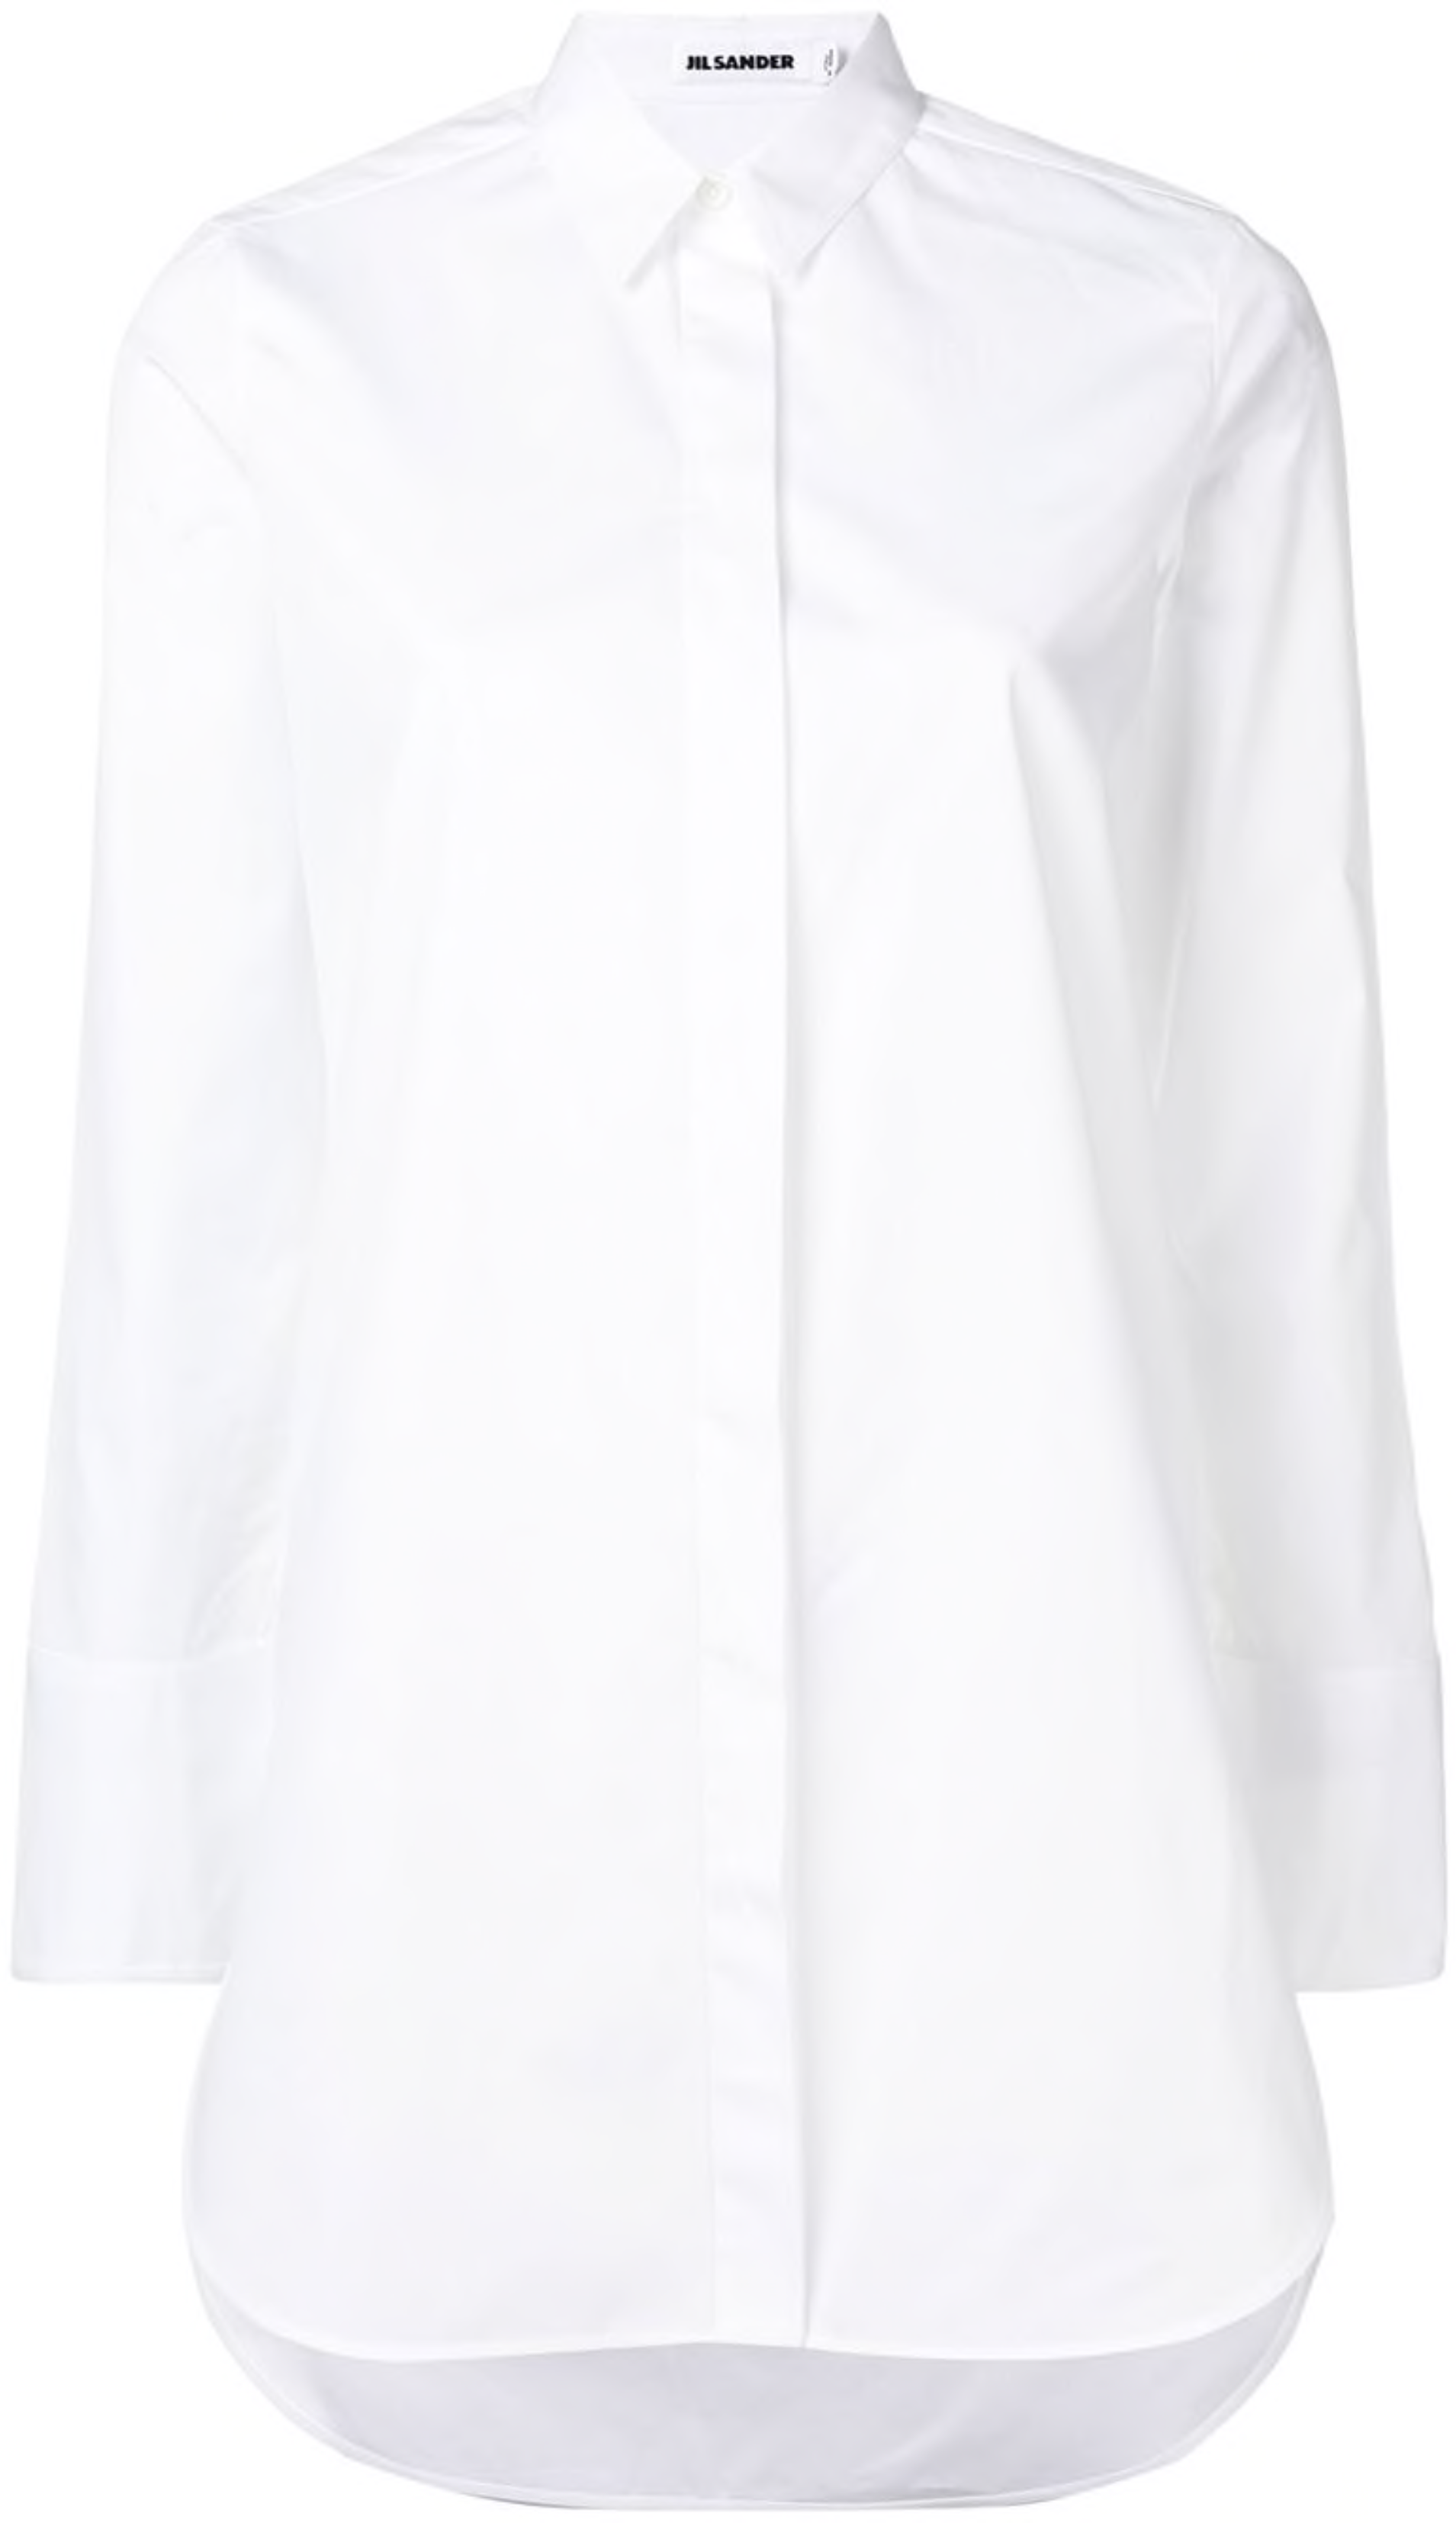 Идеальная белая рубашка — какая она? Рассказывают девушки разных профессий (фото 24)